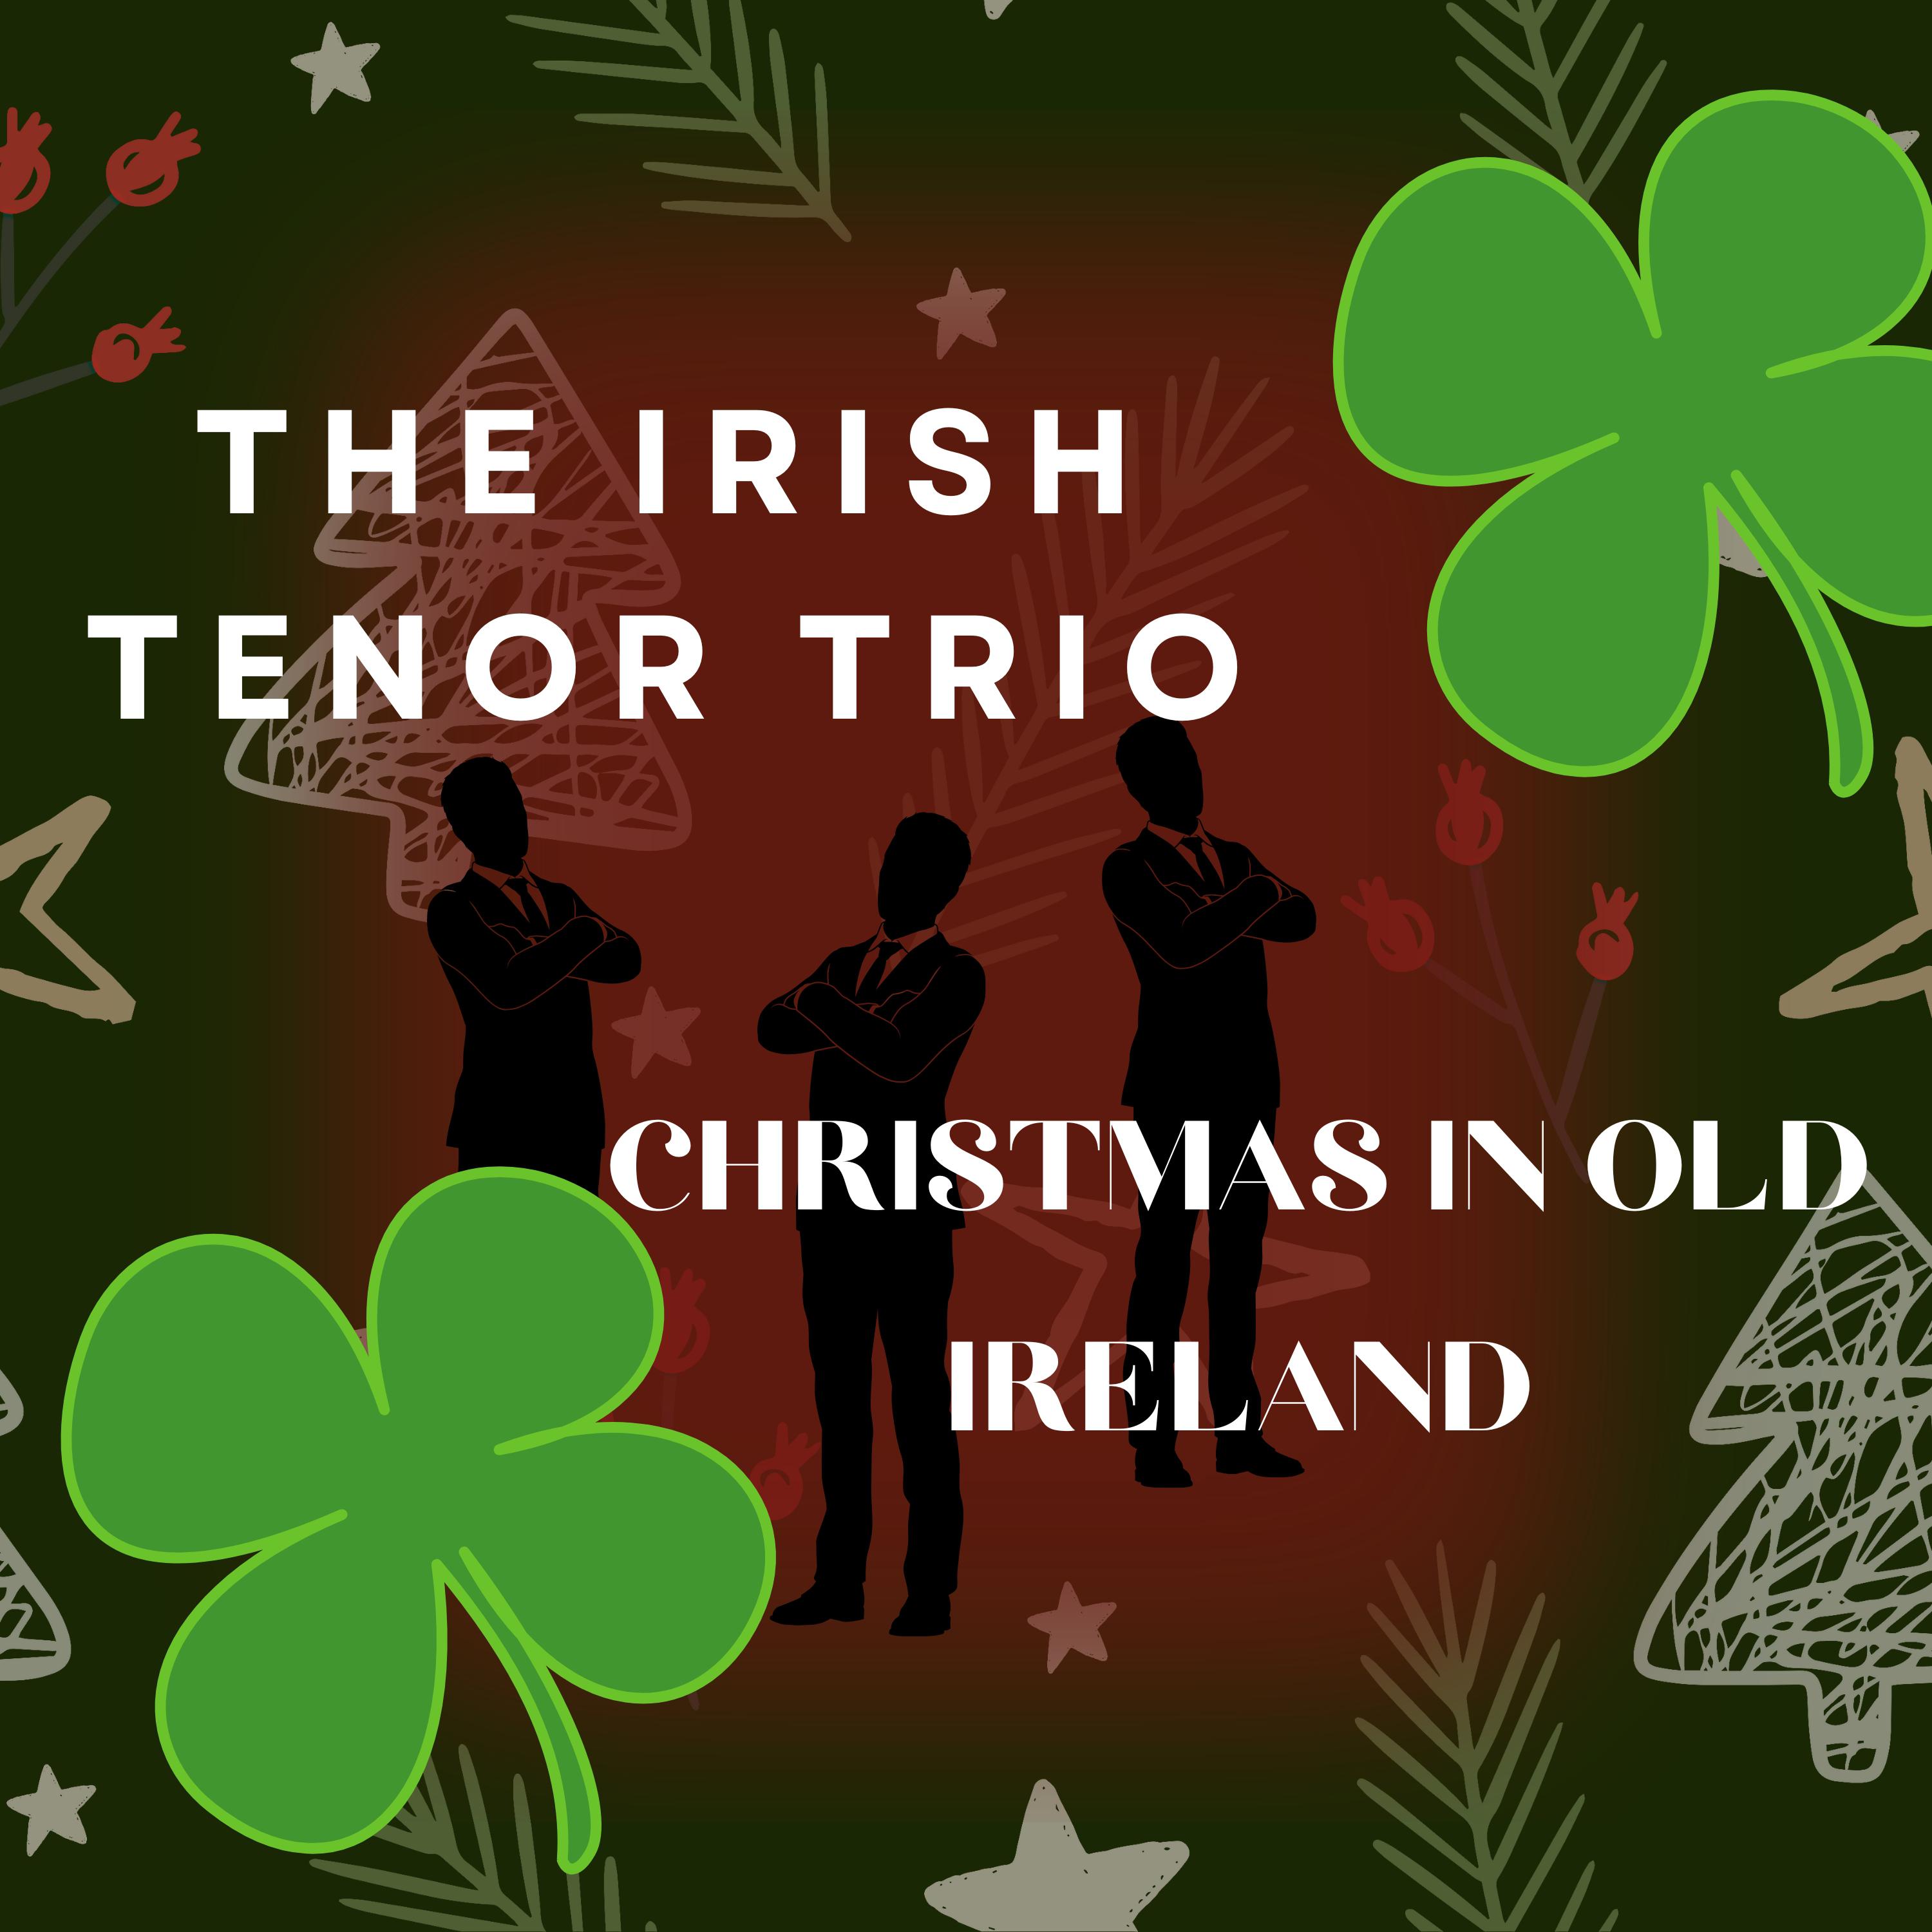 The Irish Tenor Trio - Hark! the Herald Angels Sing